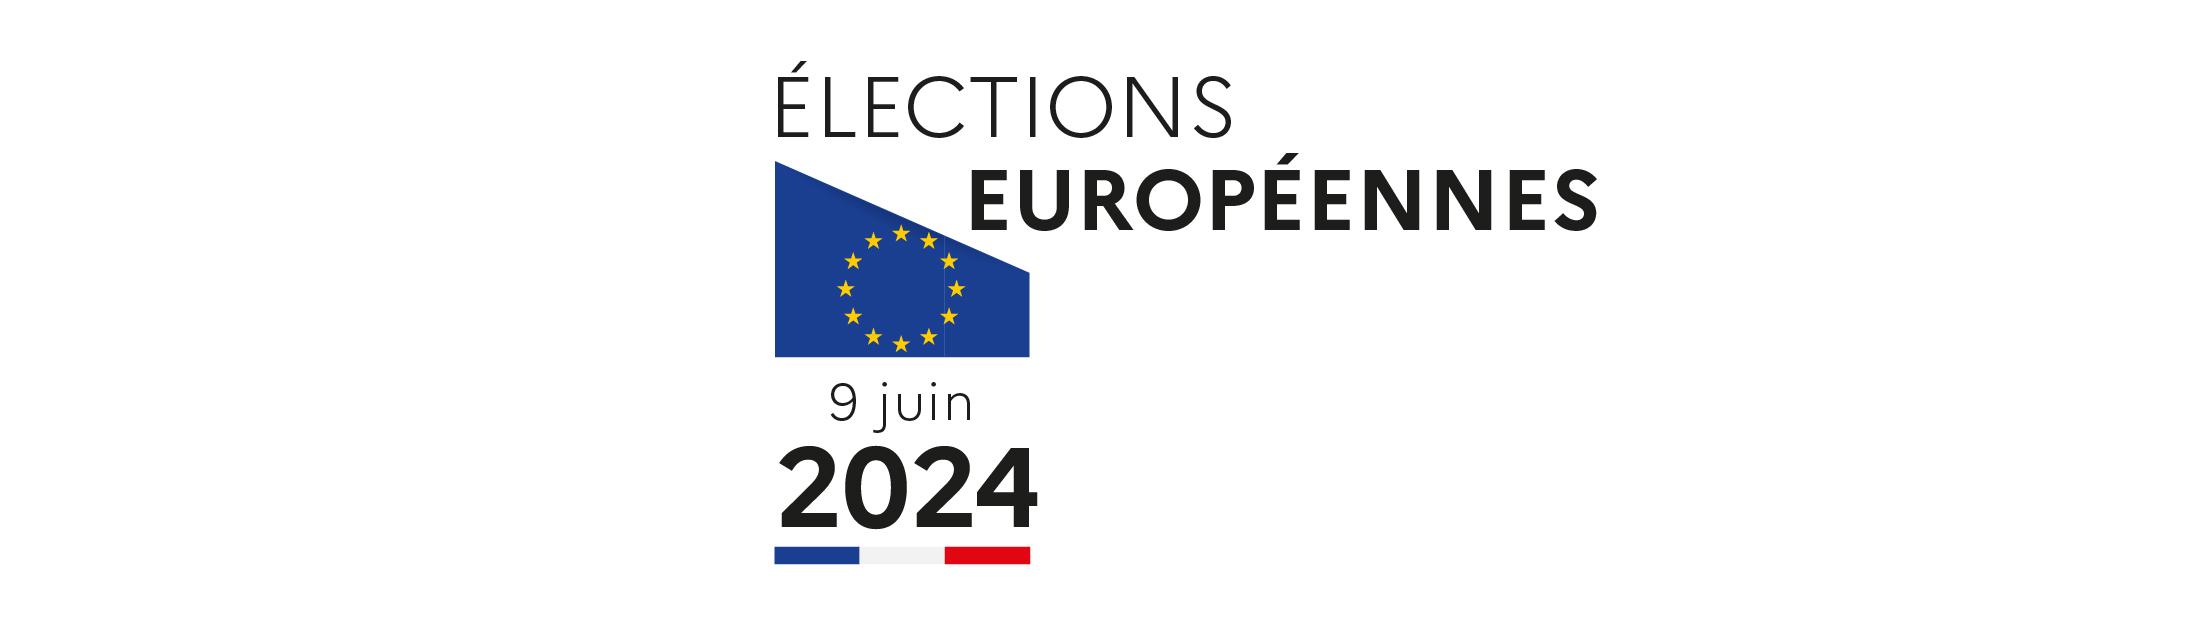 Élections européennes 2024 : dimanche 9 juin 2024 allons voter !